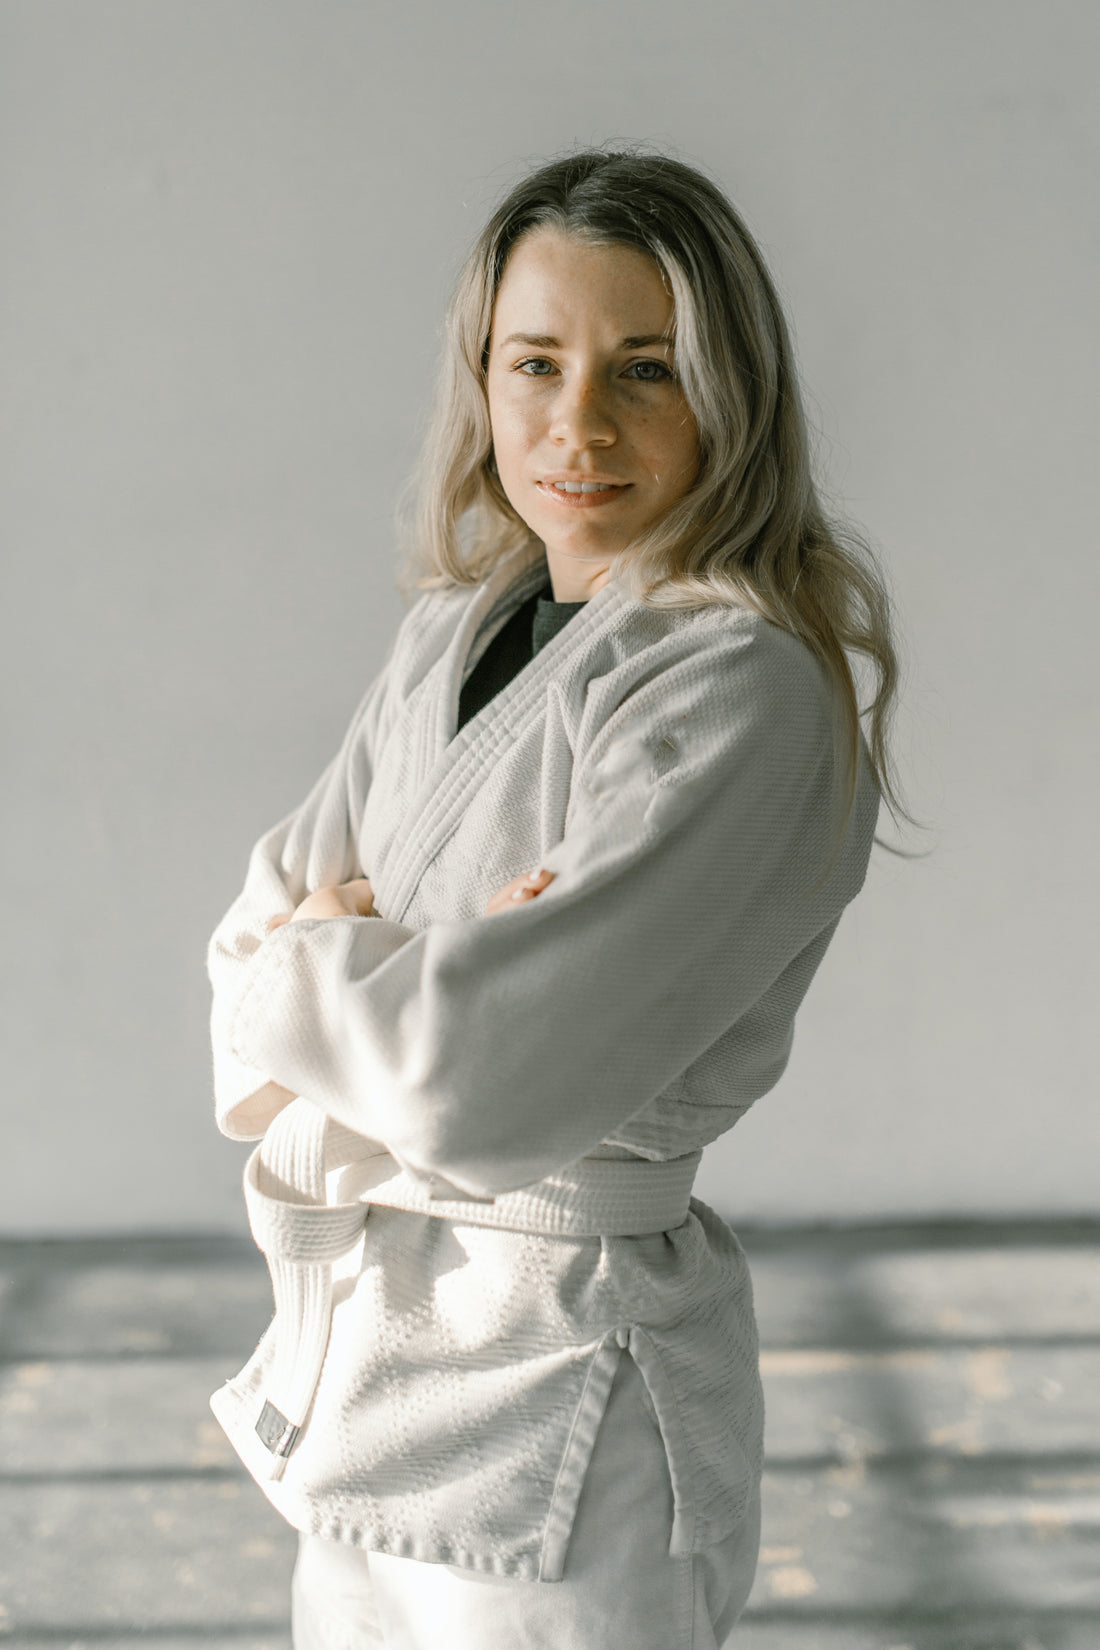 role of women in karate